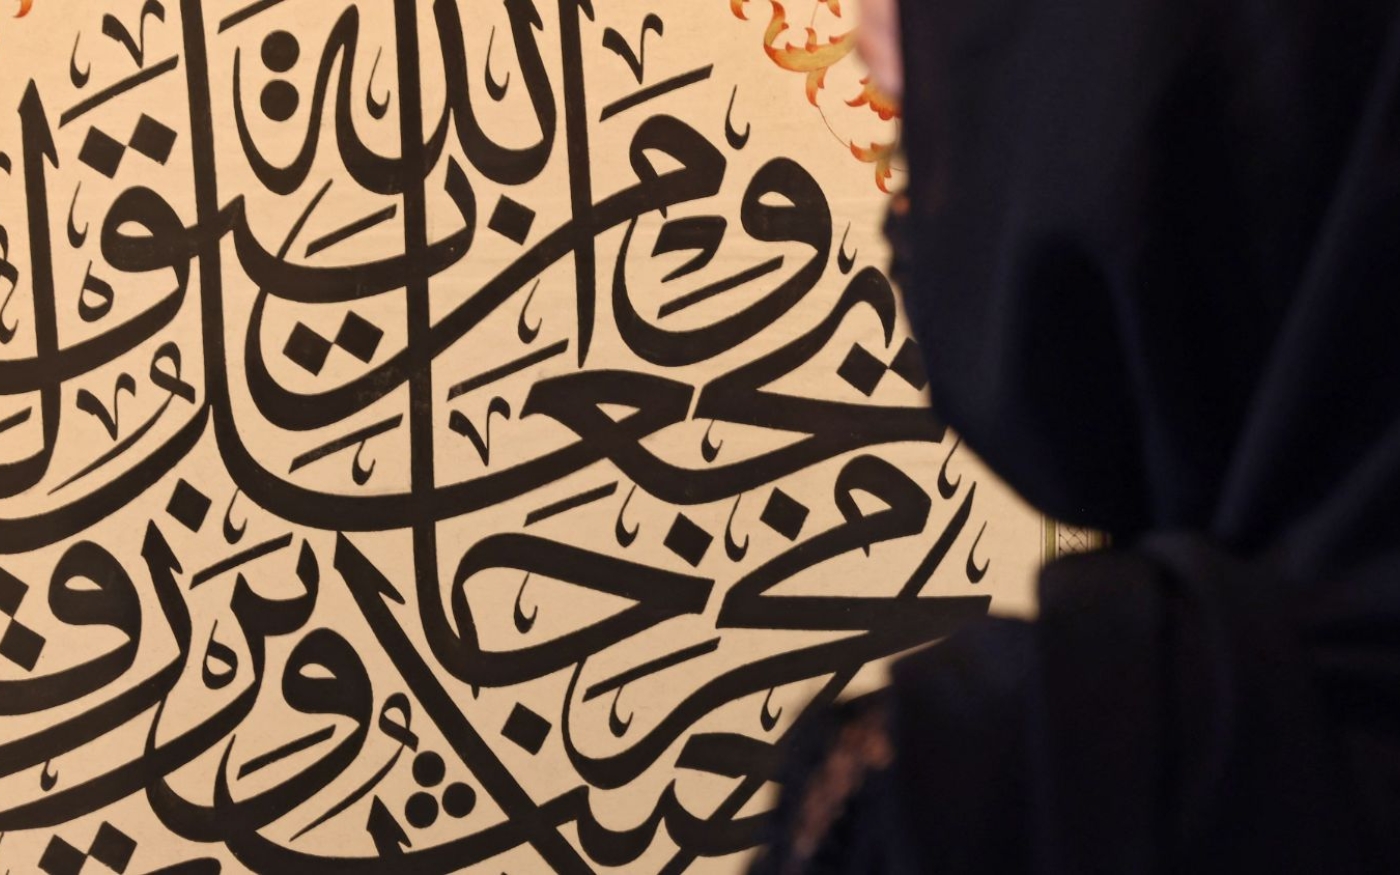 Une exposition au centre Sharjah pour l’art de la calligraphie arabe et des ornements (AFP/Giuseppe Cacace)